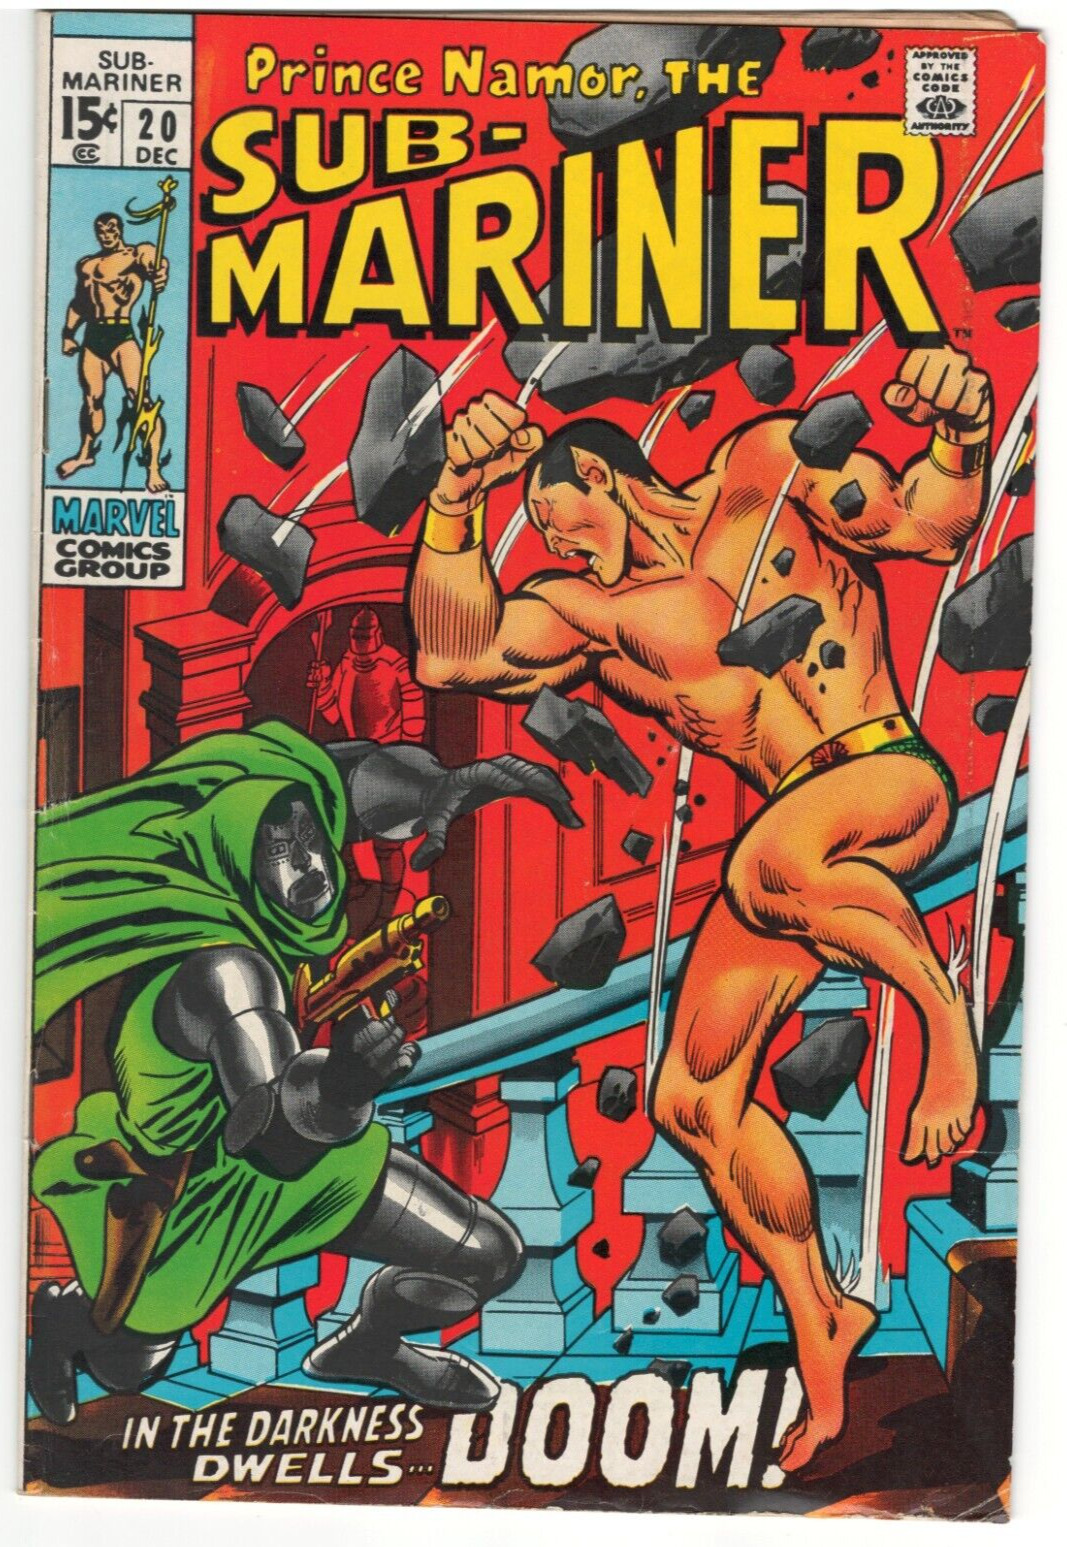 Prince Namor, The Sub Mariner #20 : MARVEL : 1969 : vs. Dr. Doom